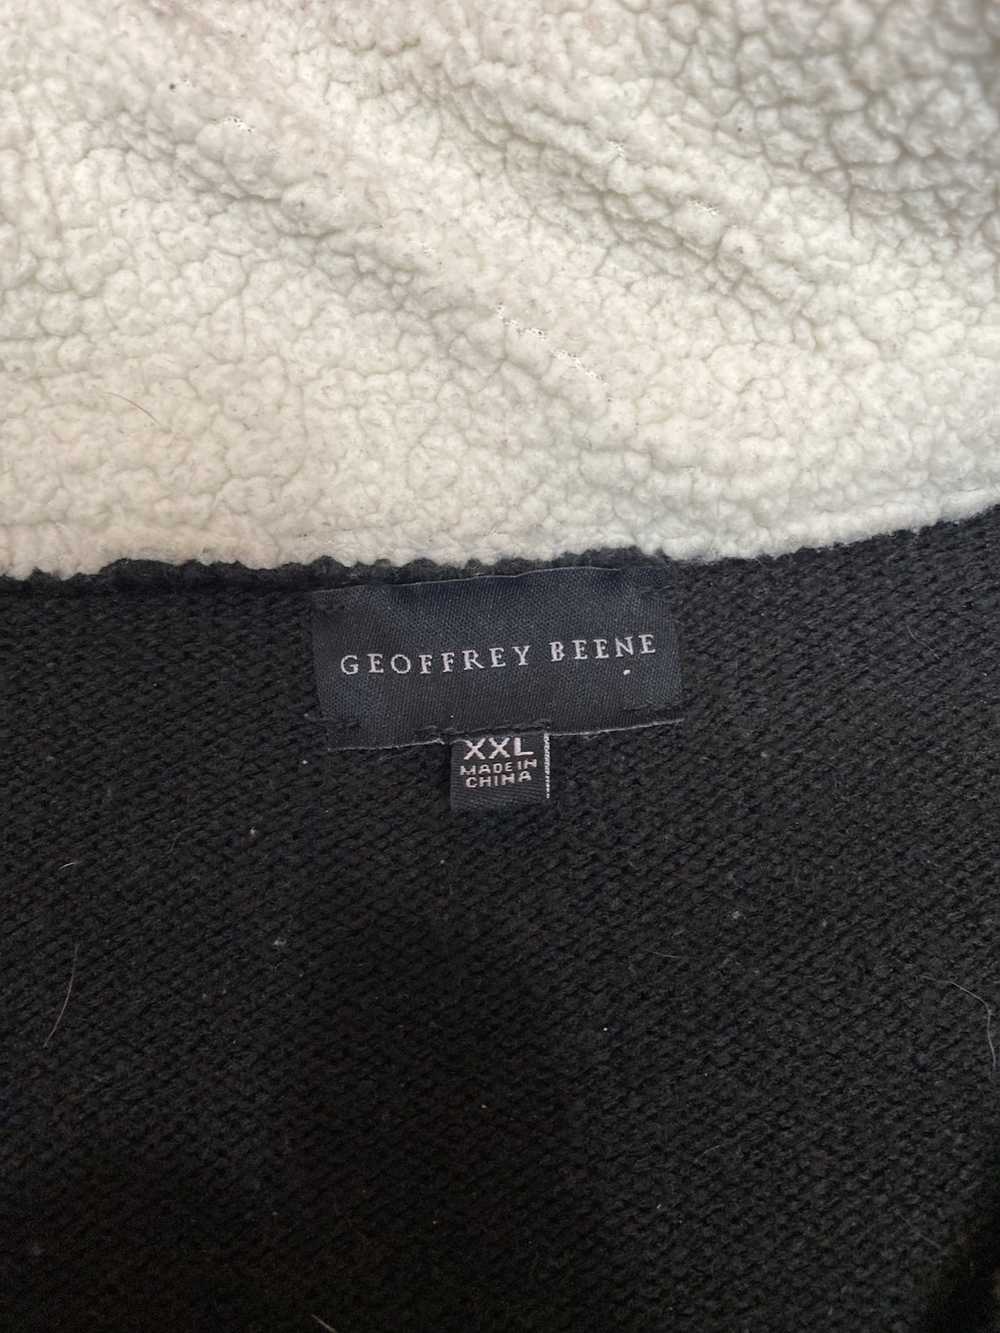 Geoffrey Beene Quarter zip with fleece collar - image 9